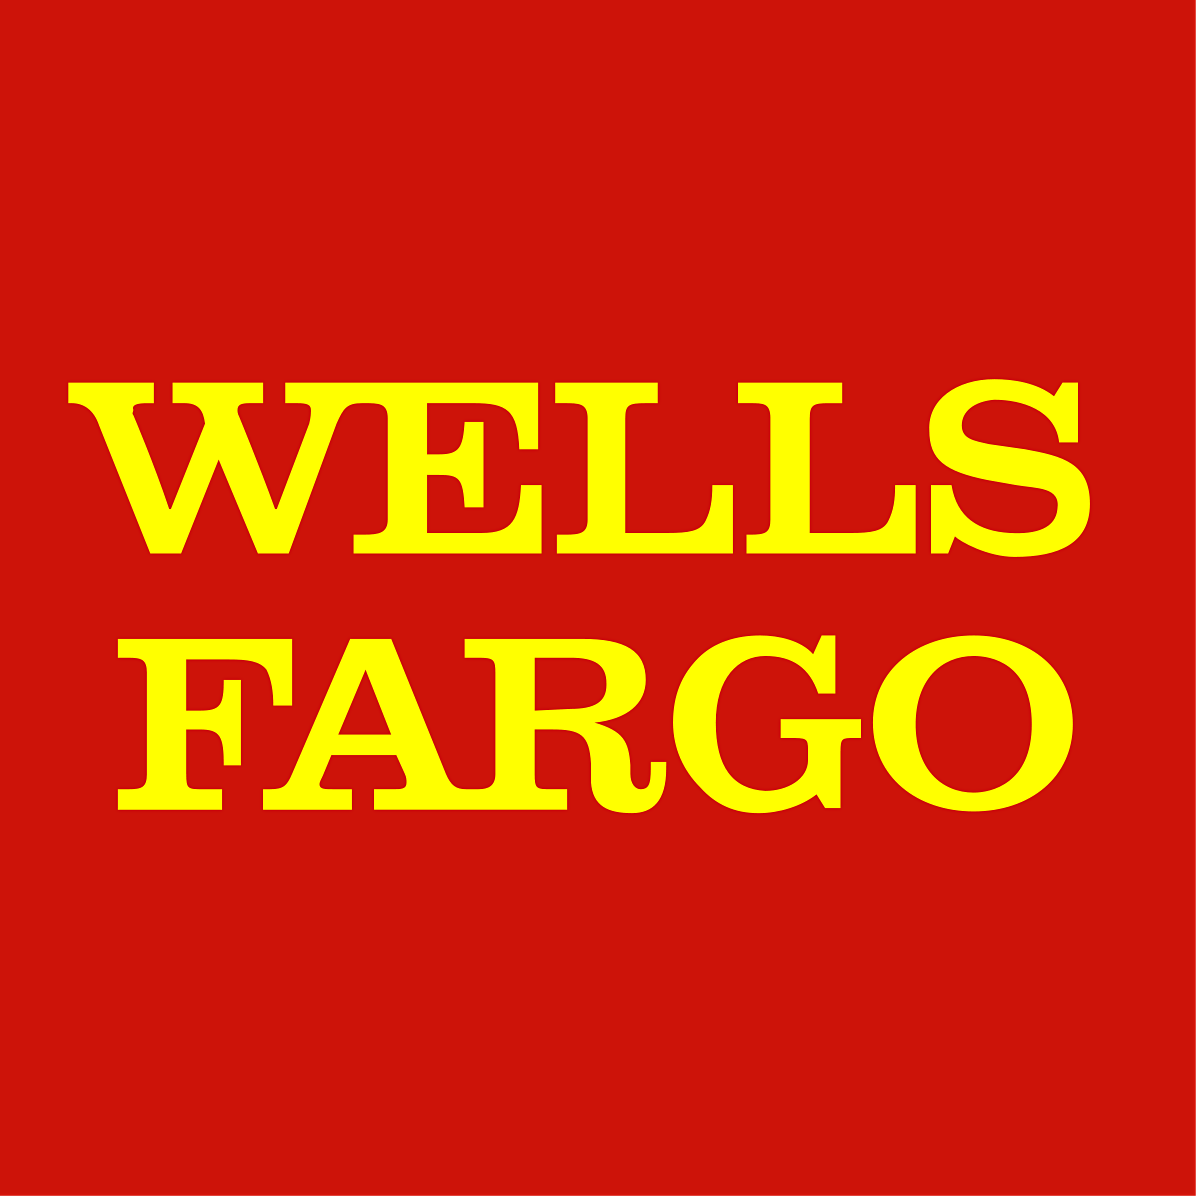 Wells Fargo: Avoiding Big Mistakes When Saving for Retirement